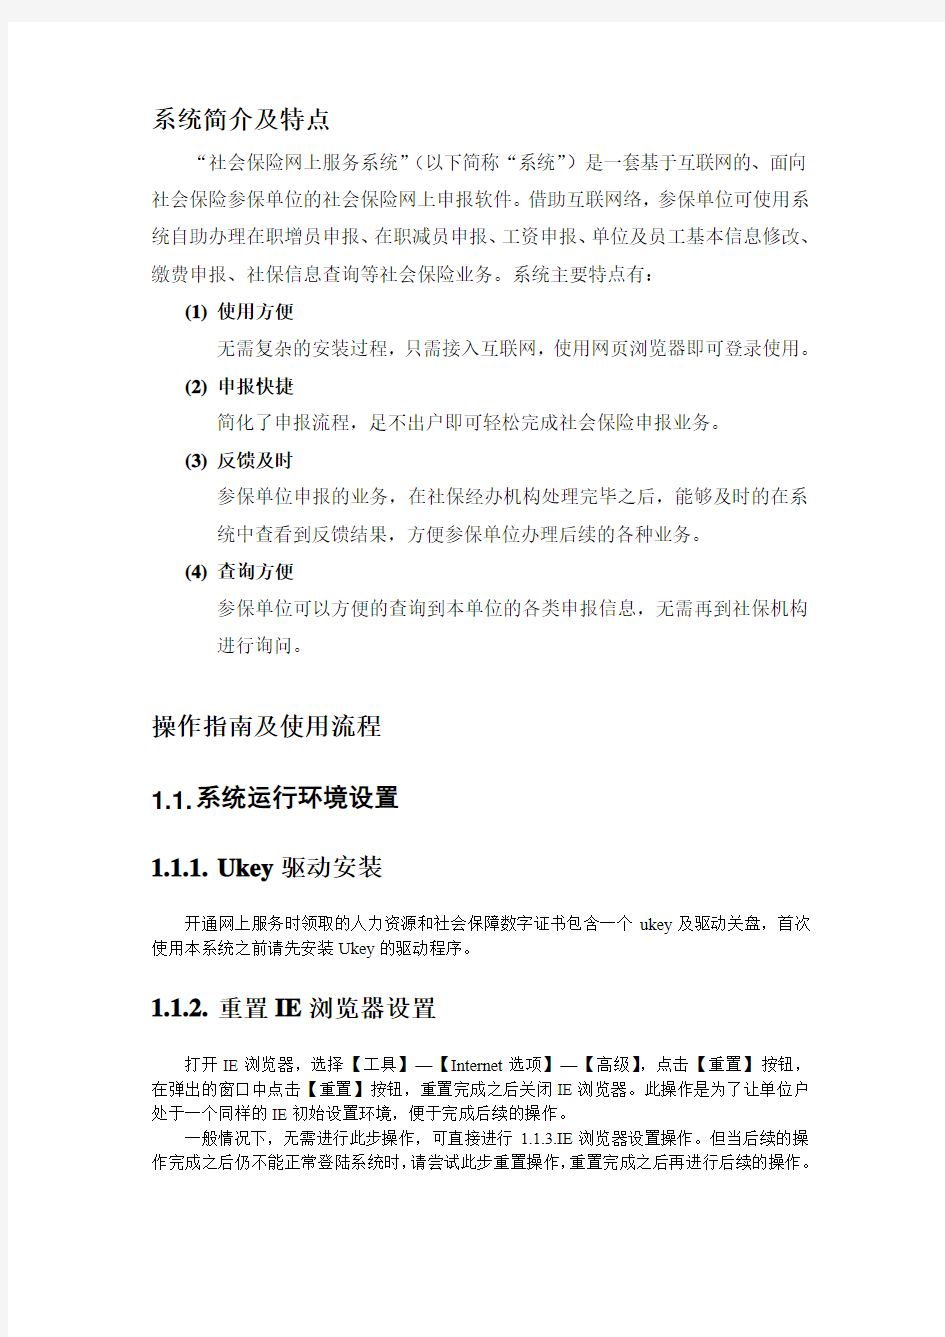 淄博市社会保险网上申报系统操作指南